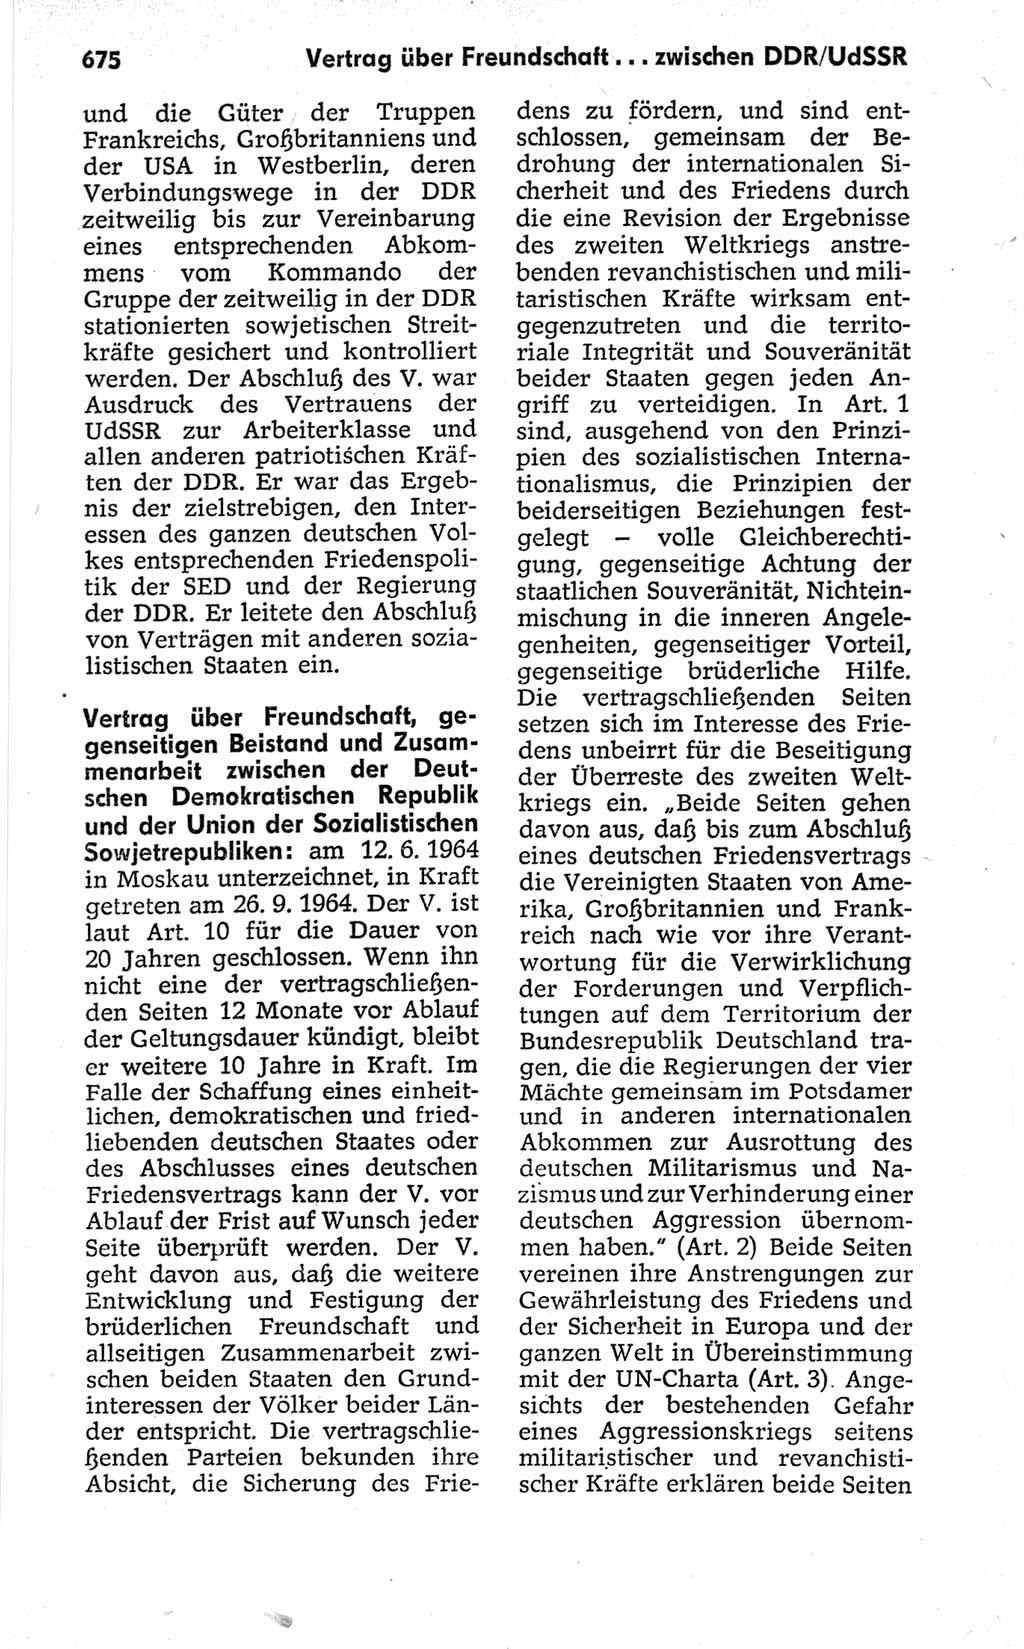 Kleines politisches Wörterbuch [Deutsche Demokratische Republik (DDR)] 1967, Seite 675 (Kl. pol. Wb. DDR 1967, S. 675)